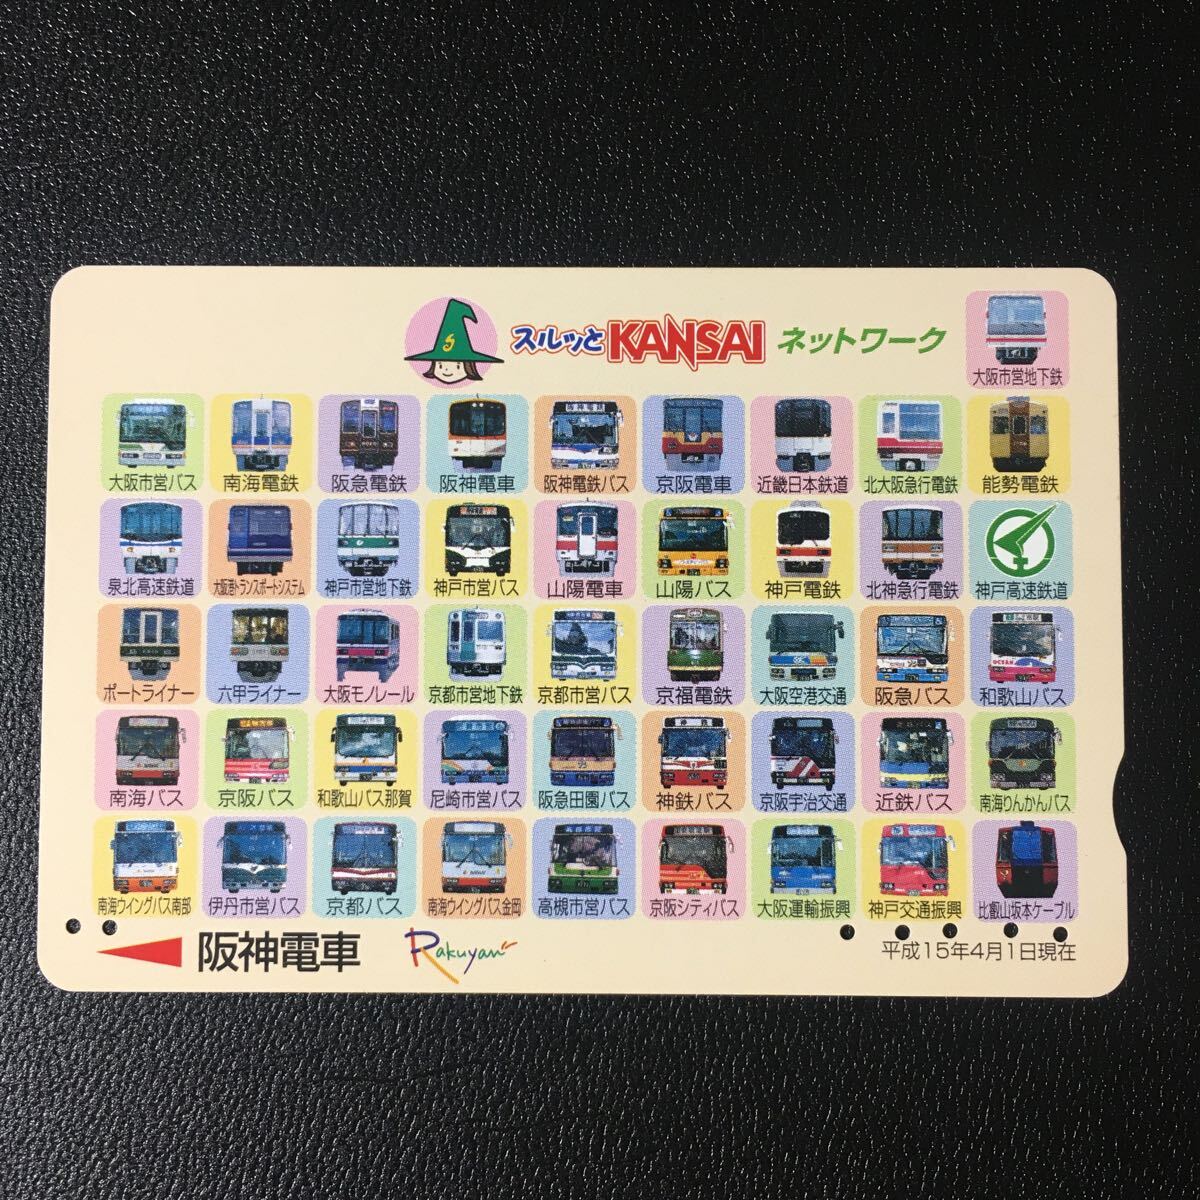 阪神/記念カード「スルッとKANSAIネットワーク(2003.04.01)」ーらくやんカード(使用済/スルッとKANSAI)_画像1